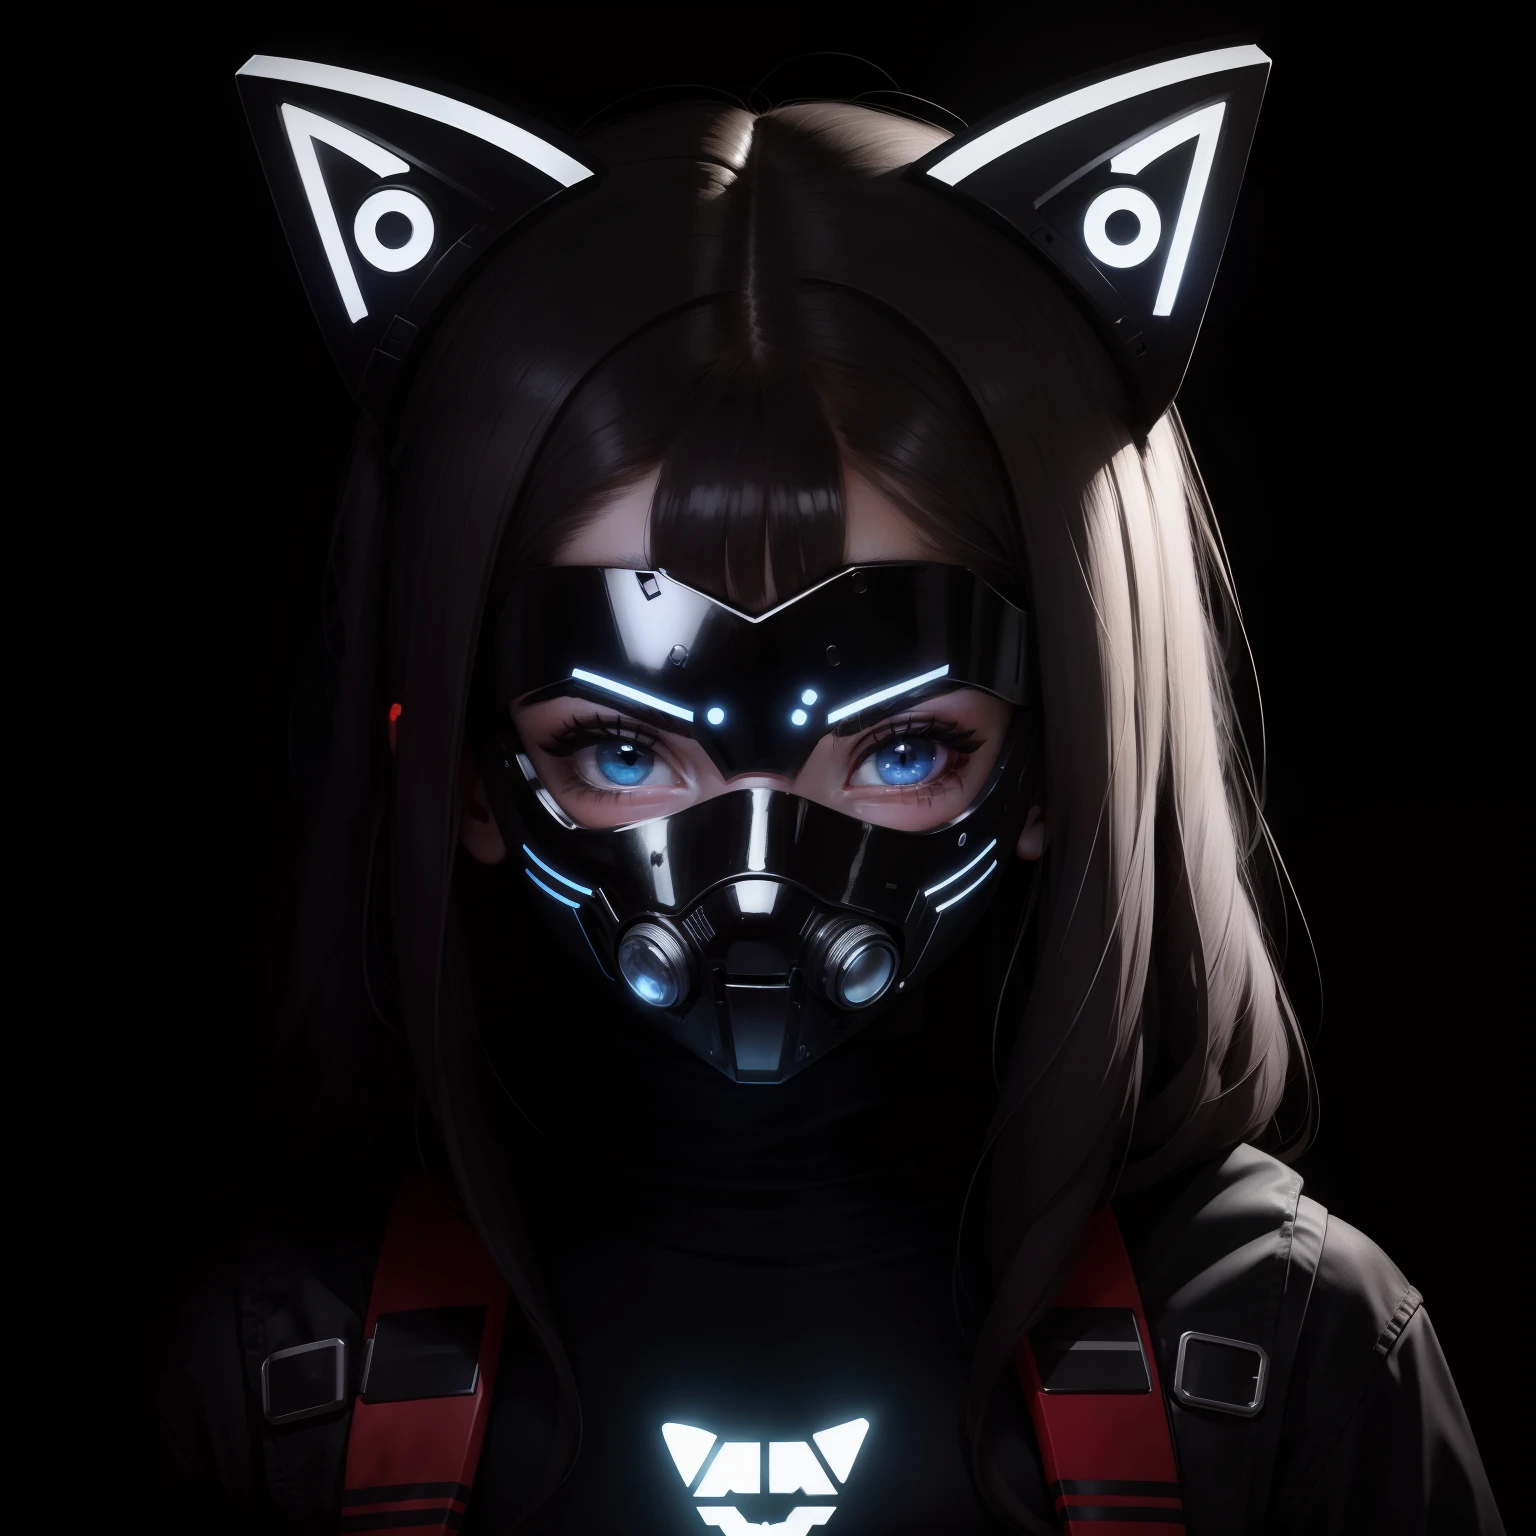 Персонаж логотипа PFP: девушка в кибернетической светодиодной маске, закрывающей ее лицо., светодиоды на маске образуют кота